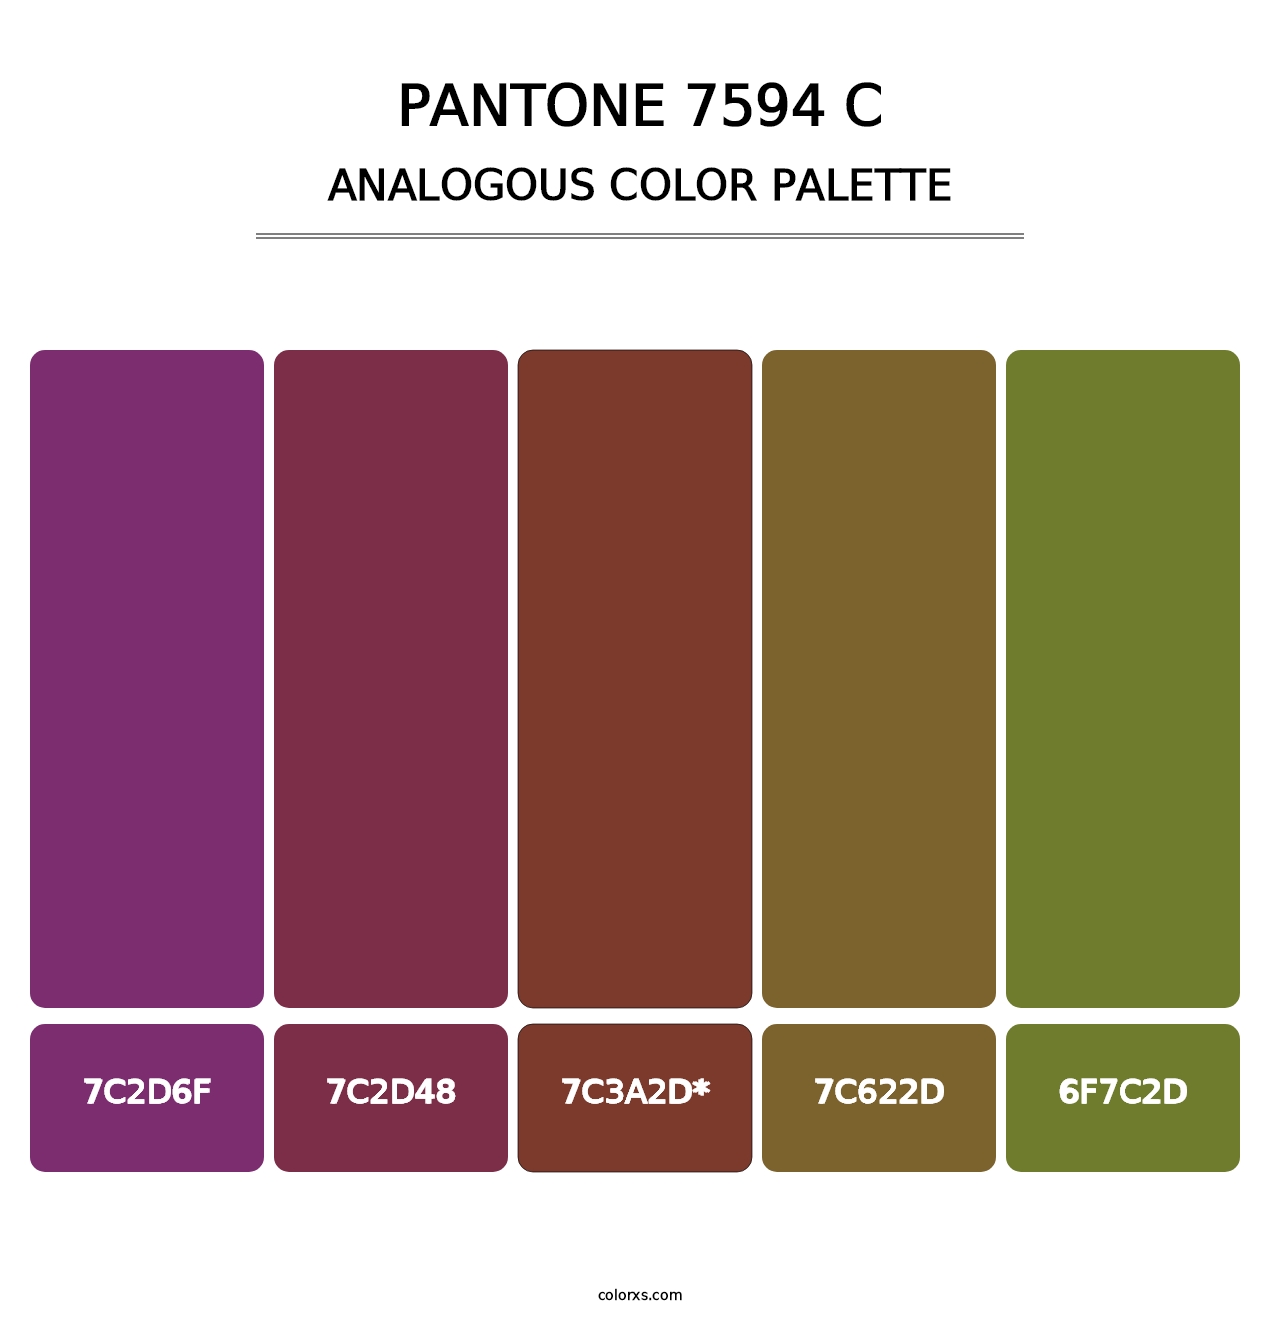 PANTONE 7594 C - Analogous Color Palette